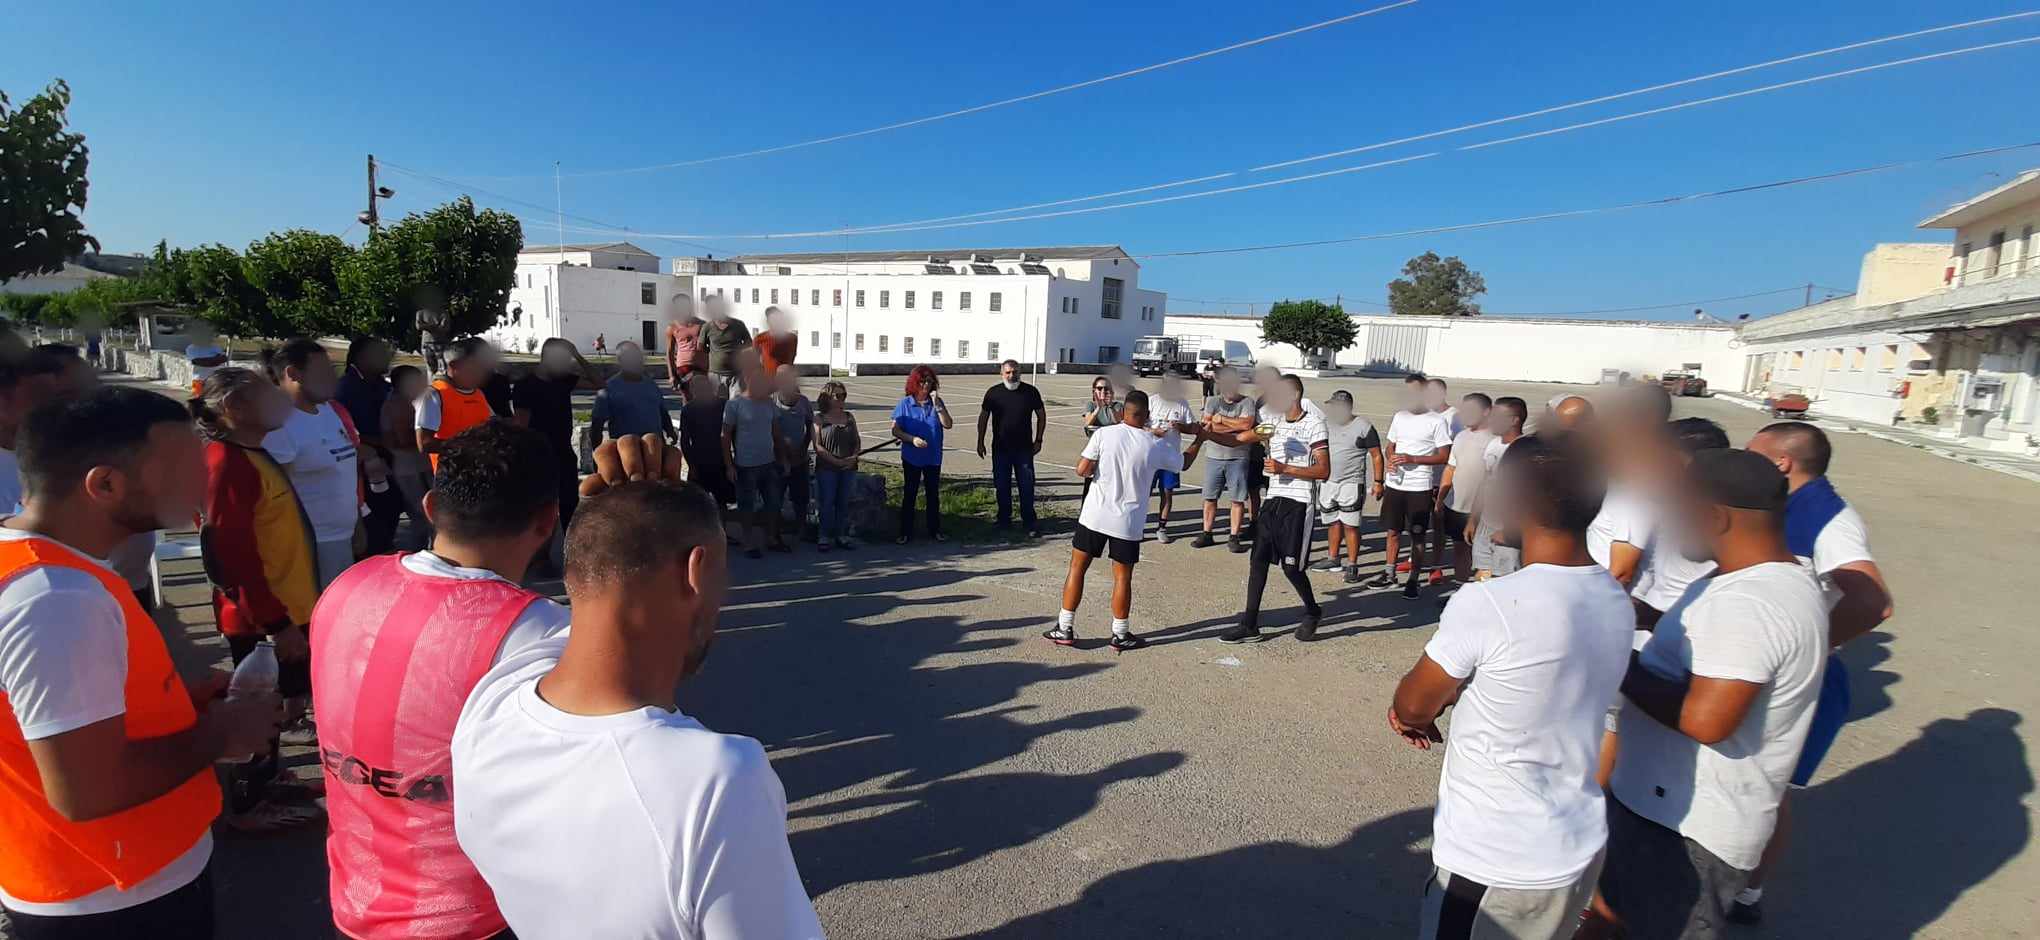 Φιλικός ποδοσφαιρικός αγώνας στις αγροτικές φυλακές Αγυιάς Χανίων για την Παγκόσμια Ημέρα κατά των Ναρκωτικών